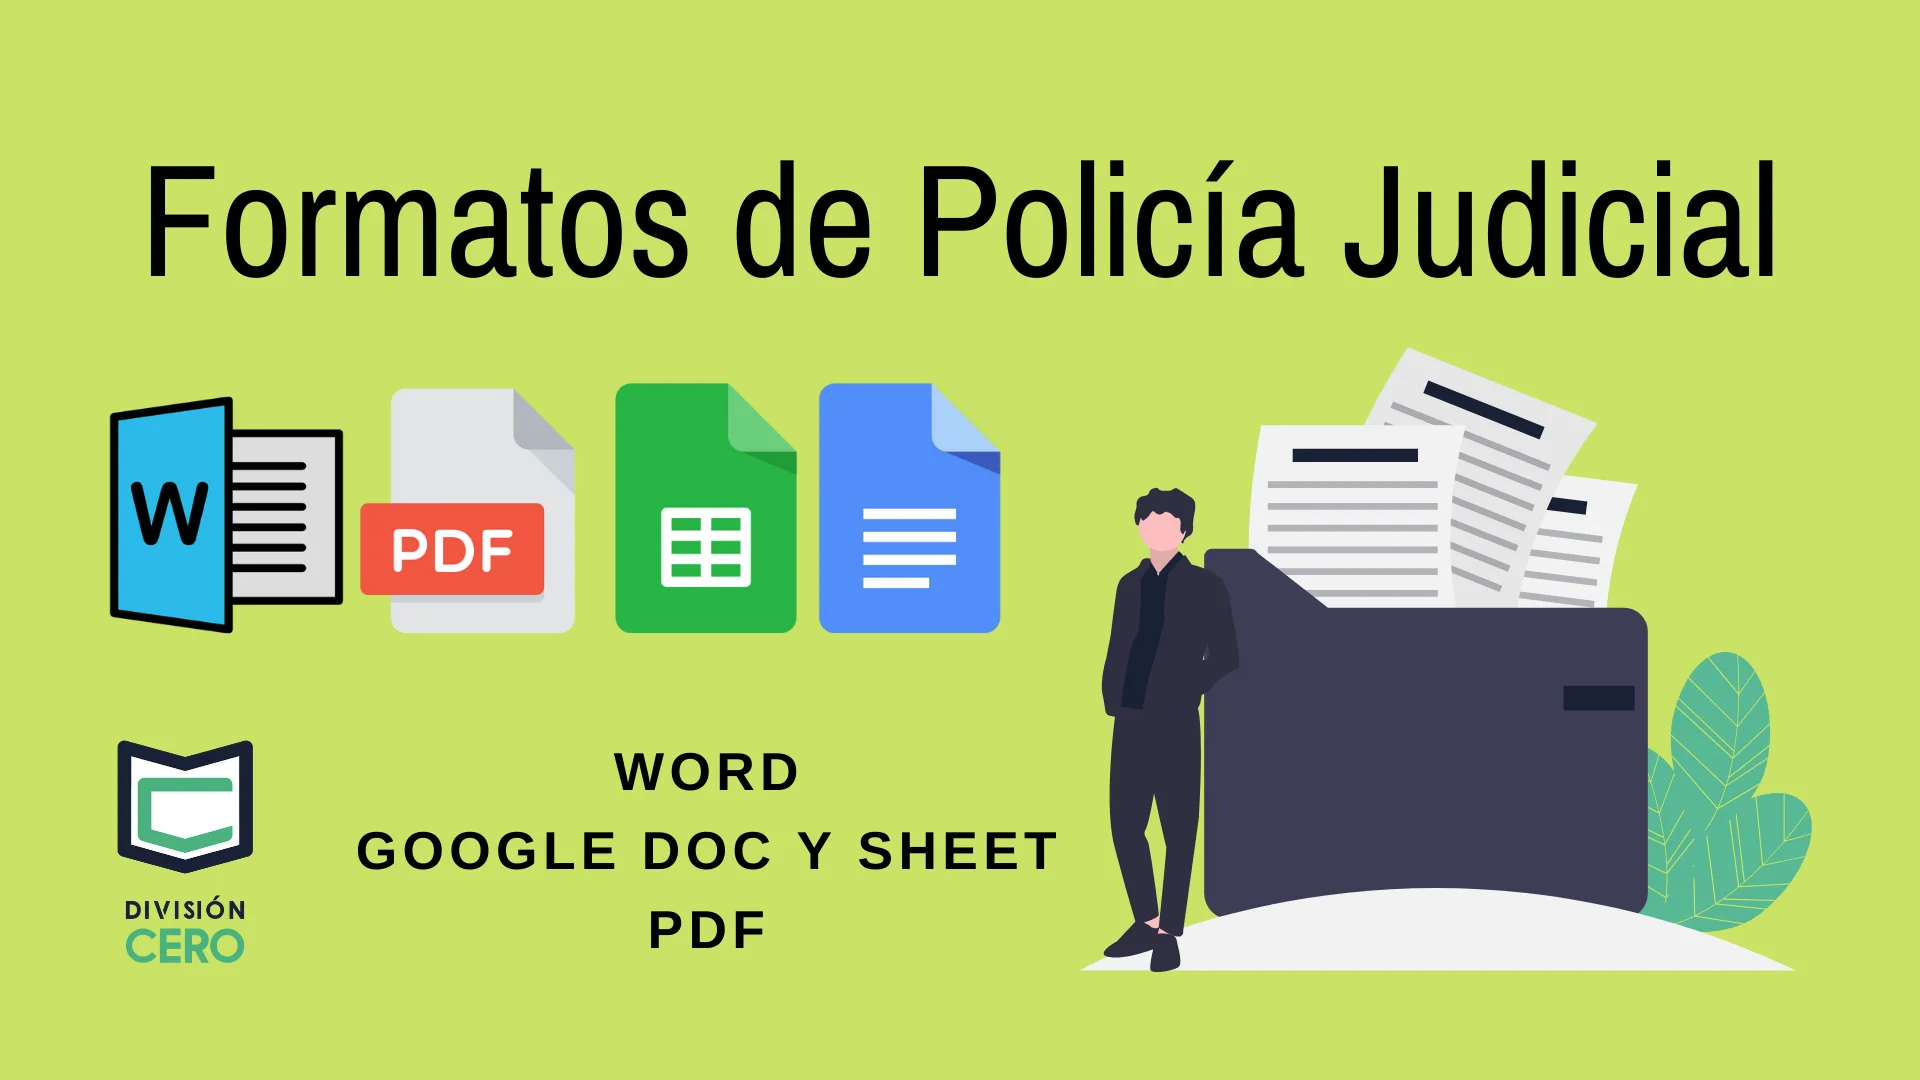 Formatos a Policía Judicial con Ejemplos en Word - PDF - Google Docs y Sheets